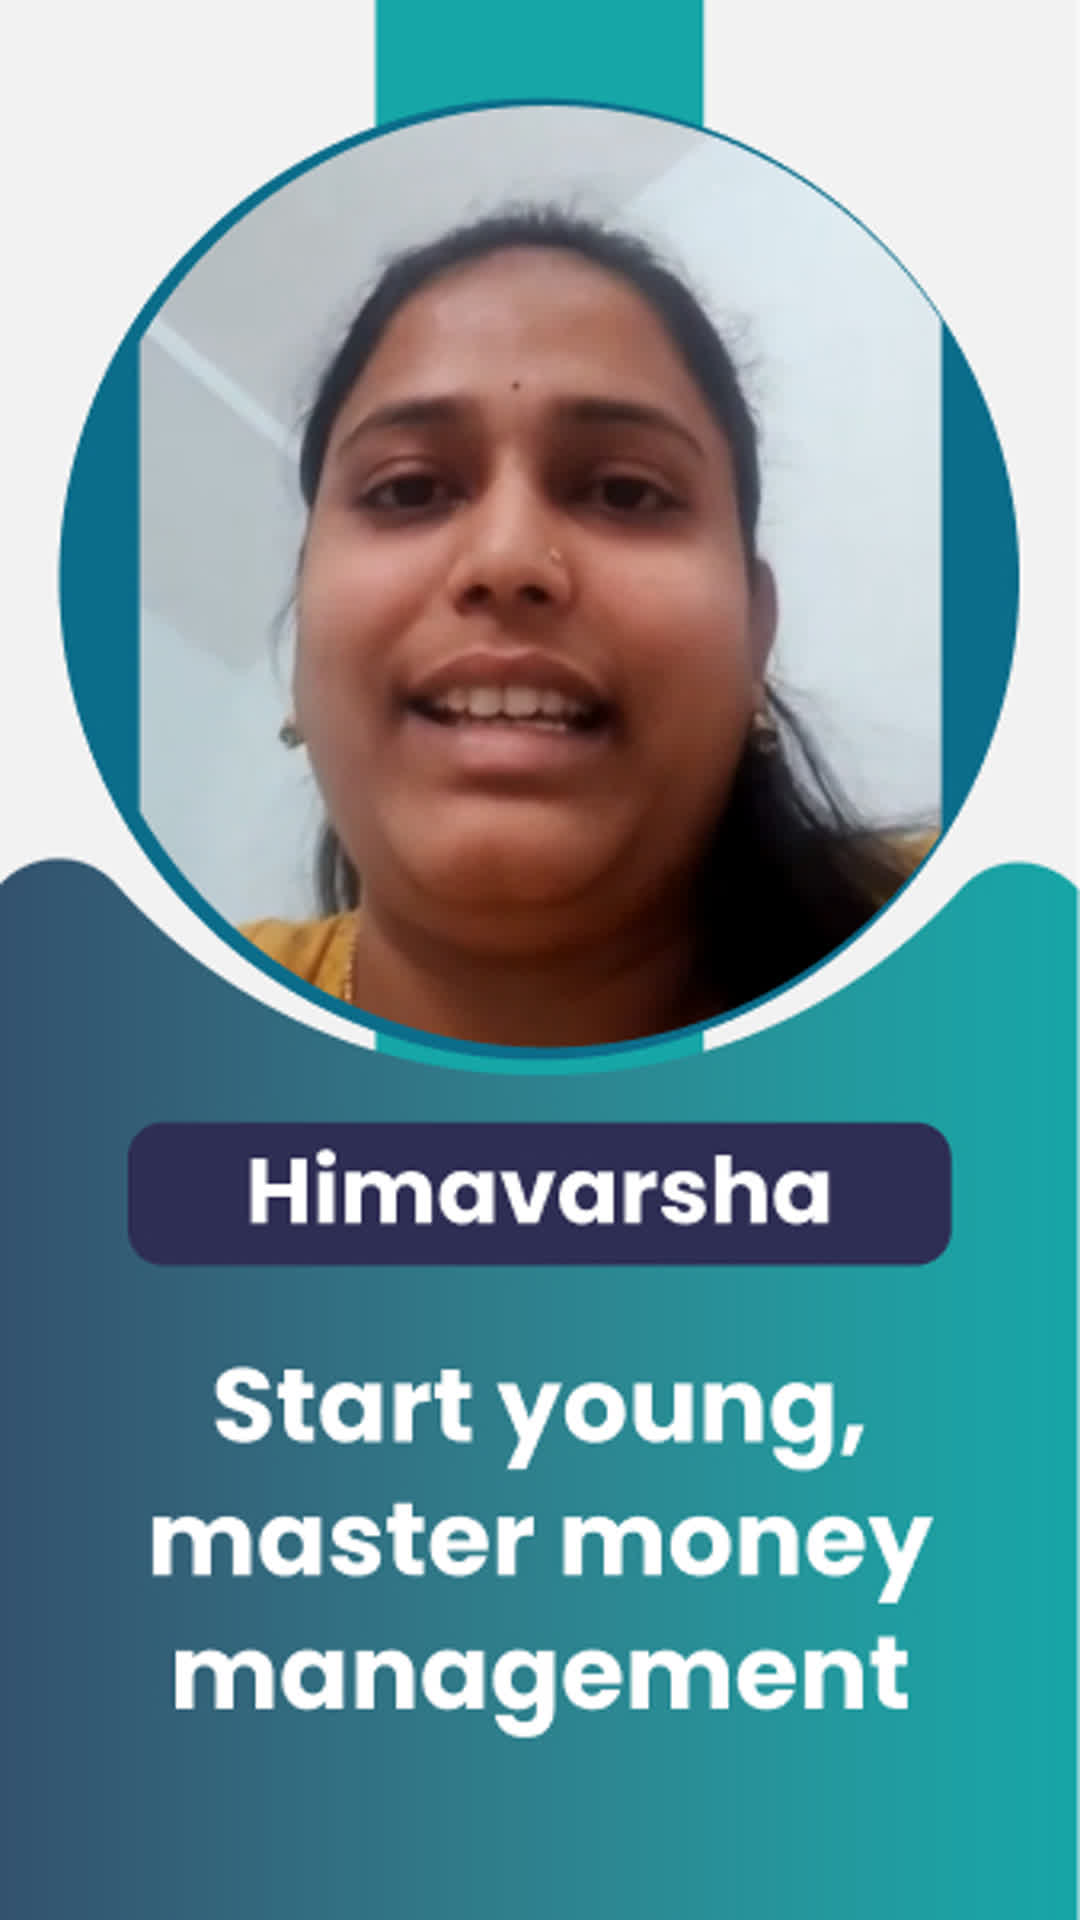 Himavarsha's Honest Review of ffreedom app - Bengaluru City ,Karnataka